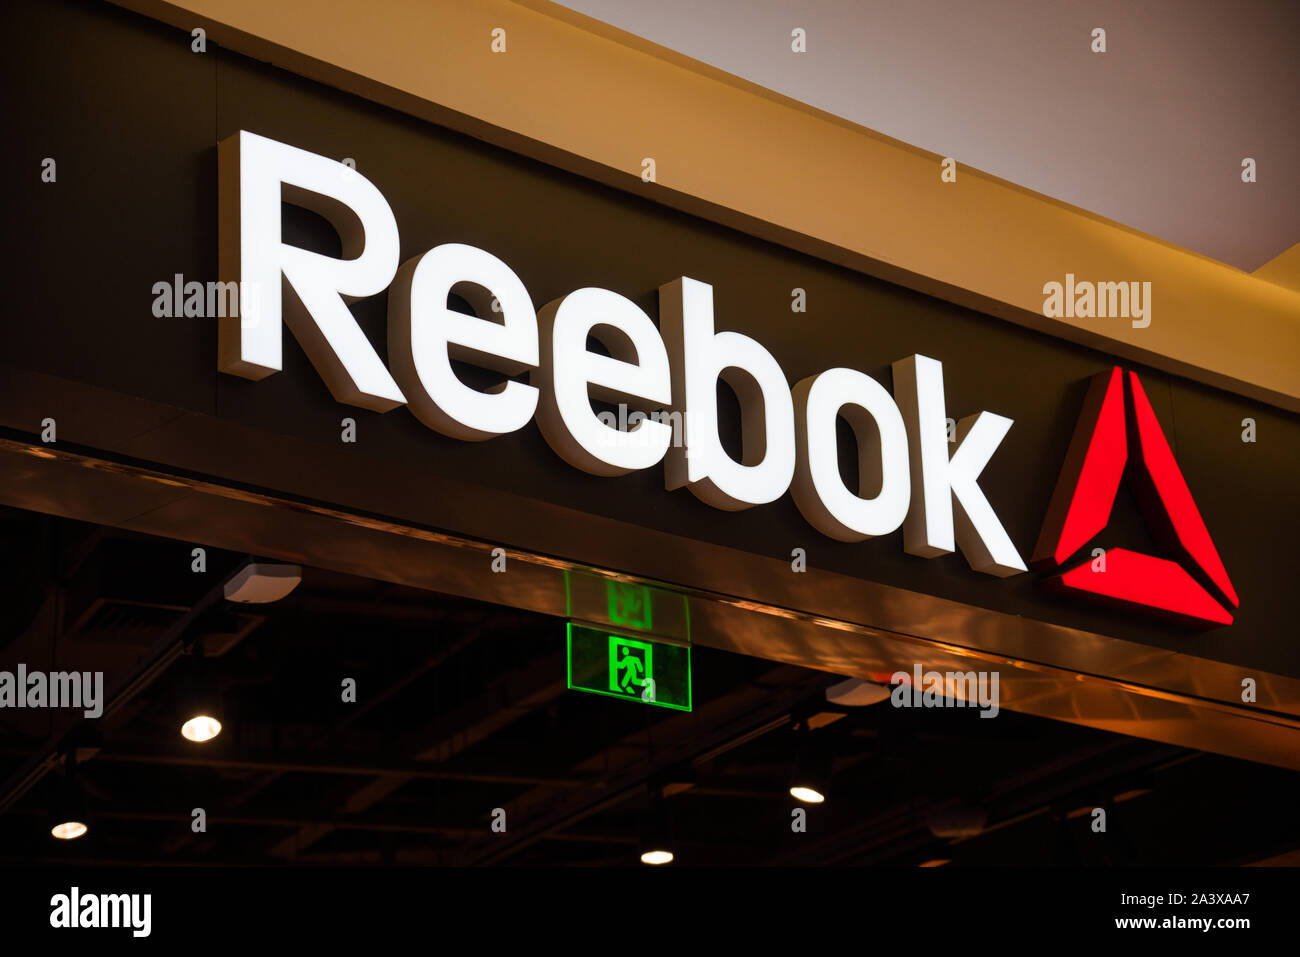 English calzado ropa, Reebok, visto el logotipo de la empresa en Shenzhen Fotografía de stock Alamy